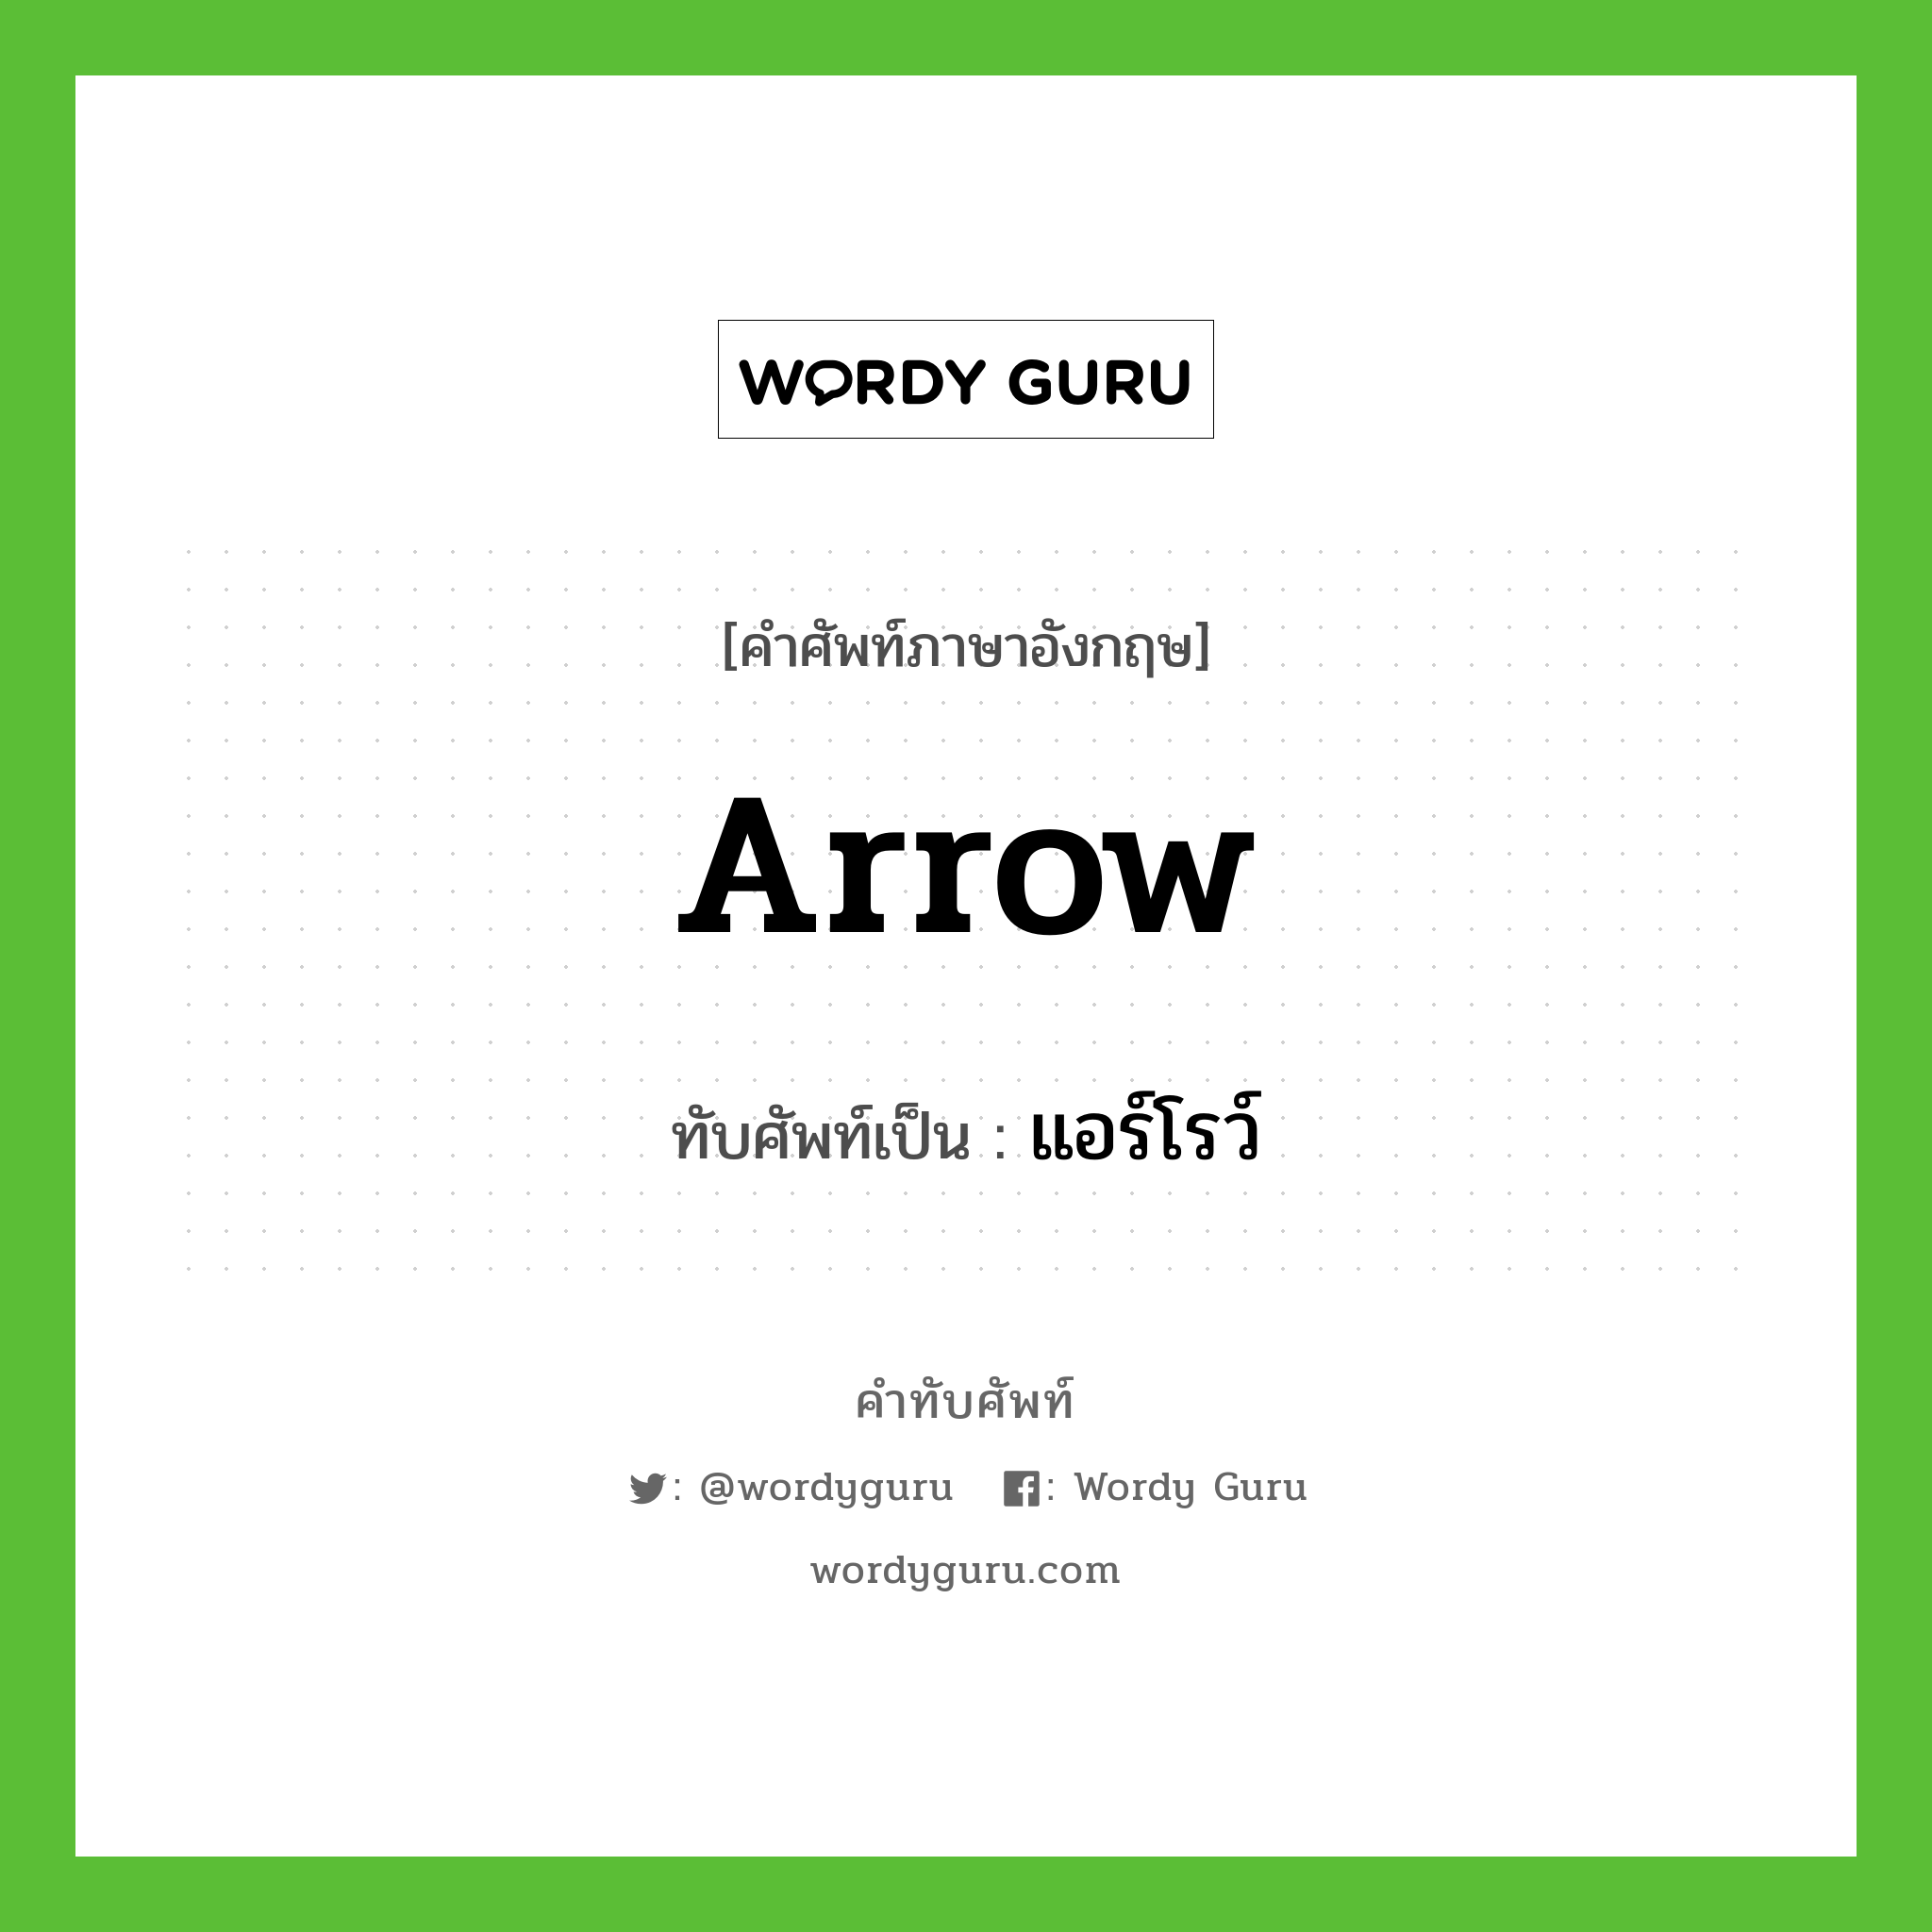 arrow เขียนเป็นคำไทยว่าอะไร?, คำศัพท์ภาษาอังกฤษ arrow ทับศัพท์เป็น แอร์โรว์